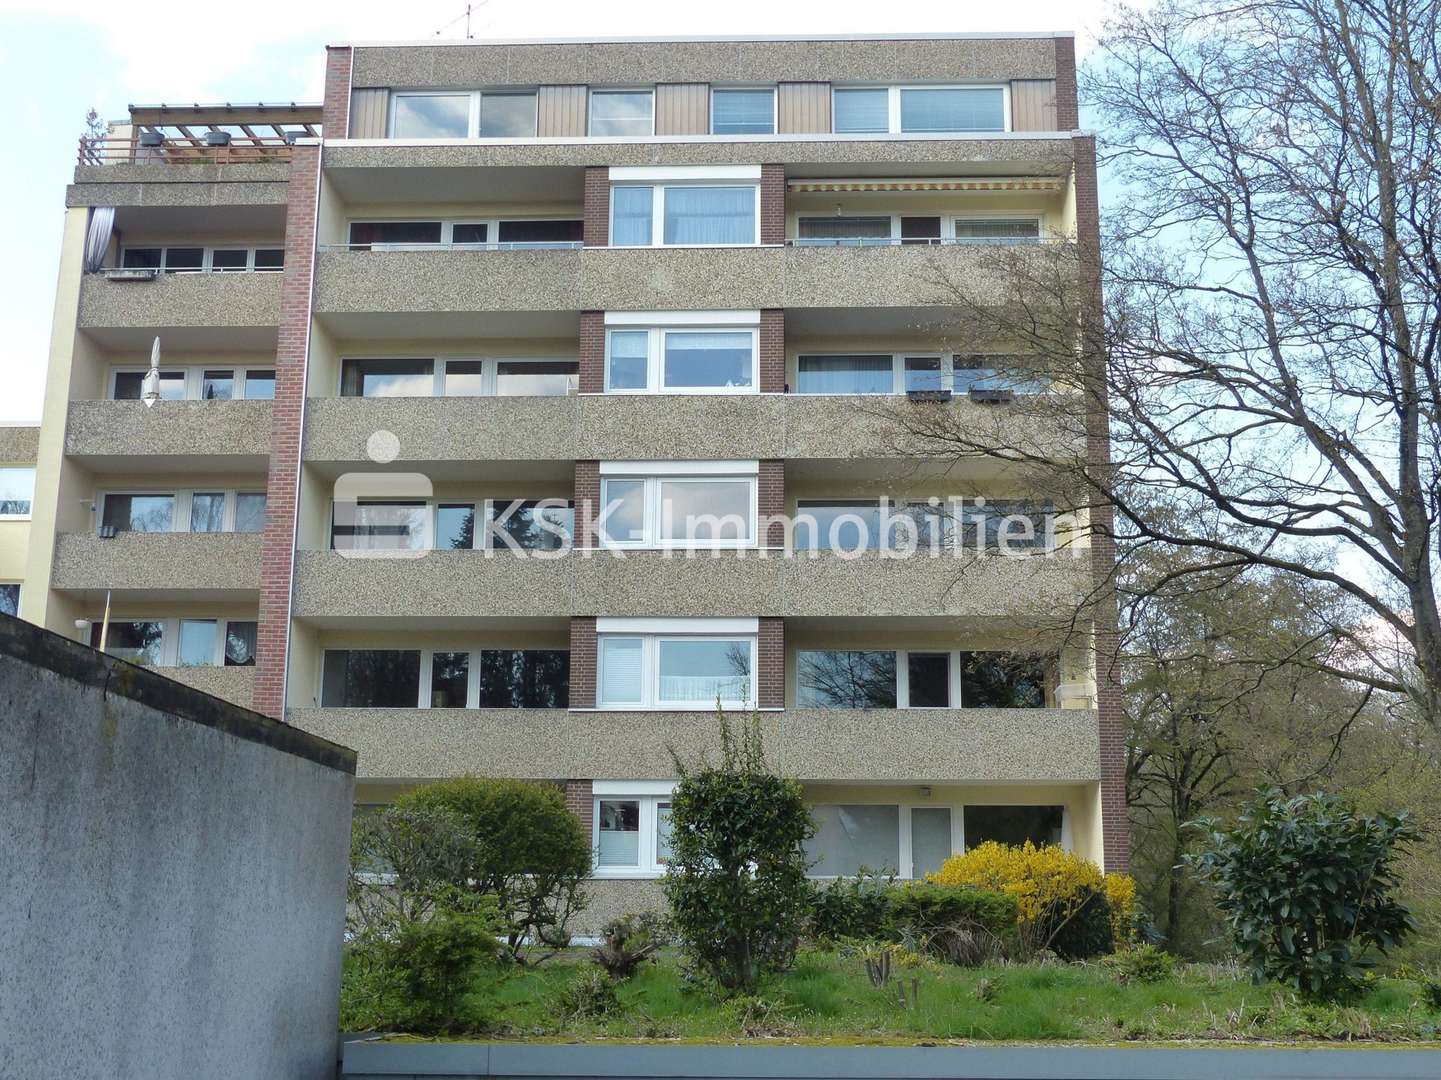 124076 Außenansicht - Etagenwohnung in 30165 Hannover mit 82m² kaufen